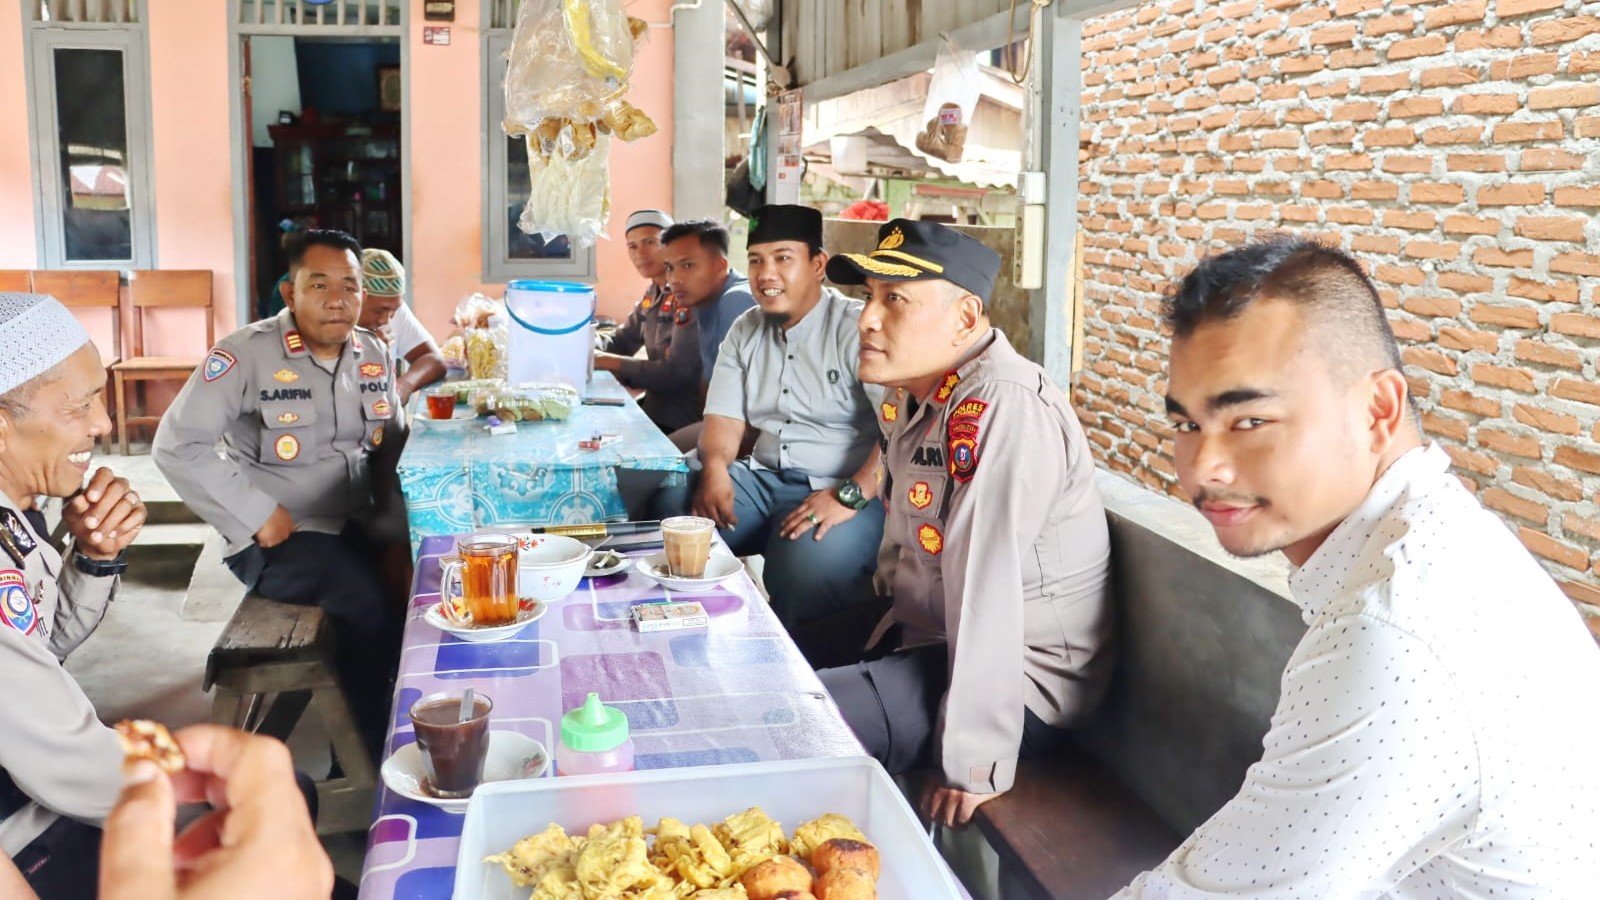 Jumat Curhat, Kapolres Padangsidimpuan Perkenalkan Program Santabi ke Warga